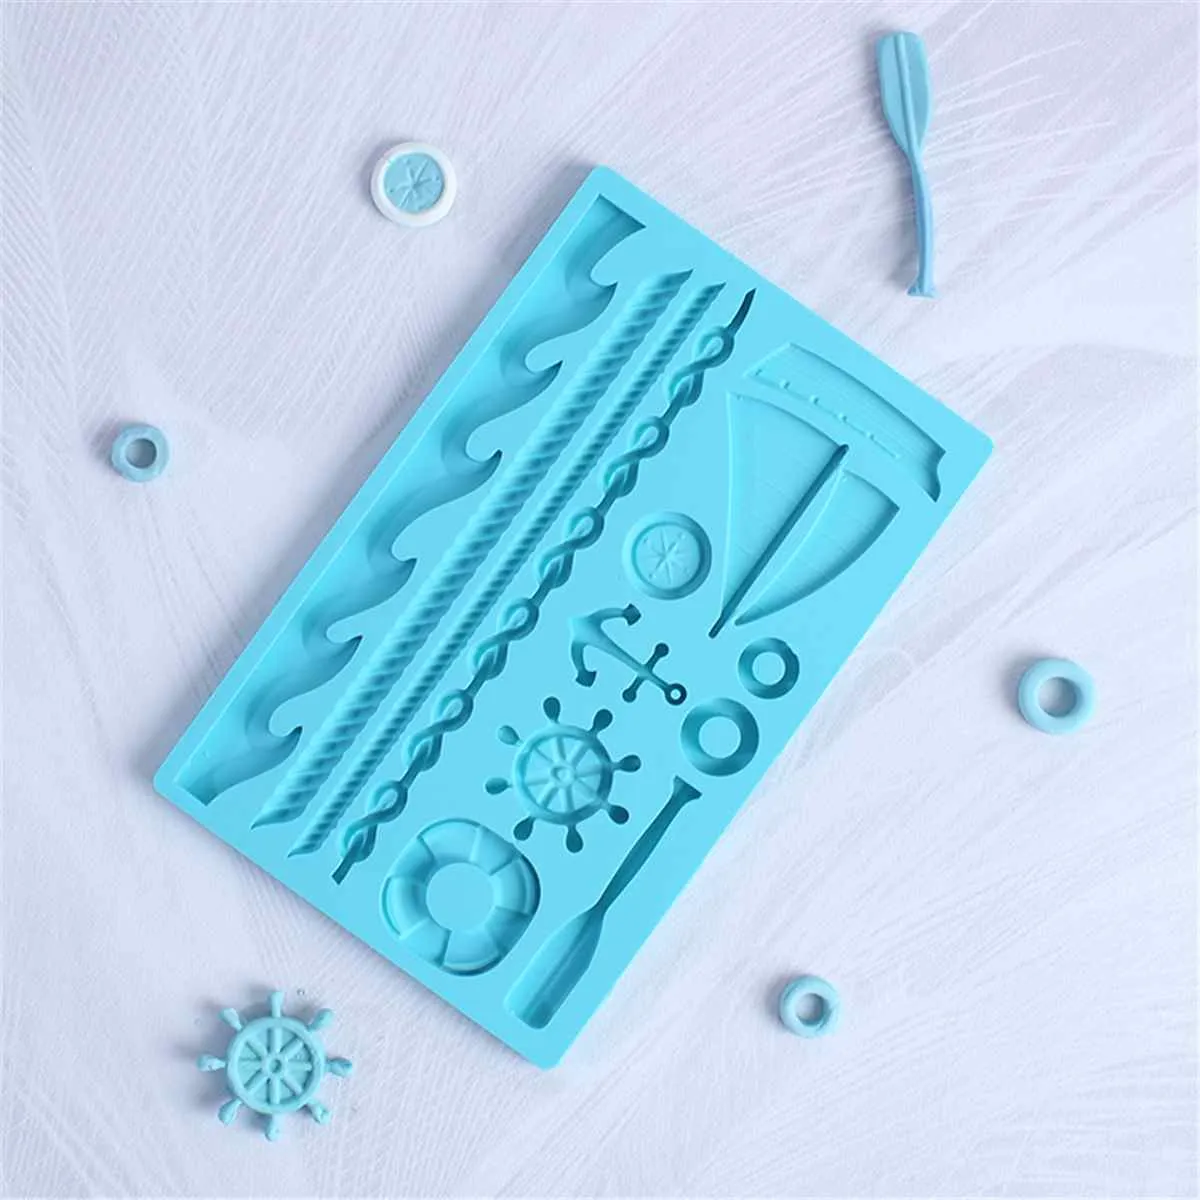 1 Stück Boot Schiffsanker Form Fondantform Silikon Paddel Welle Kuchenform DIY Kuchen Gum Paste Cupcake Schokolade Dekorieren Werkzeug